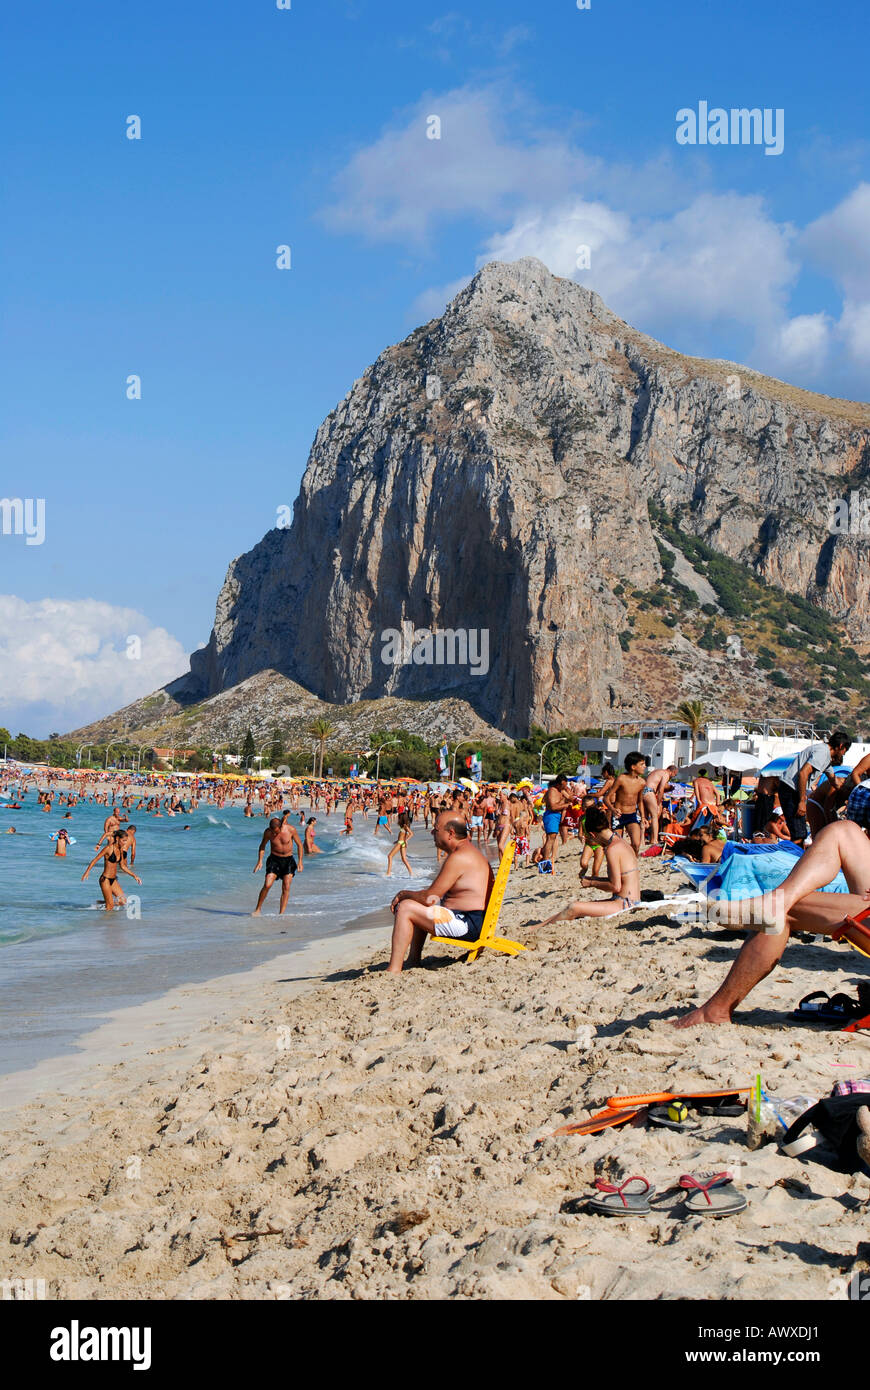 The beach of San Vito Lo Capo Sicily Italy Stock Photo - Alamy